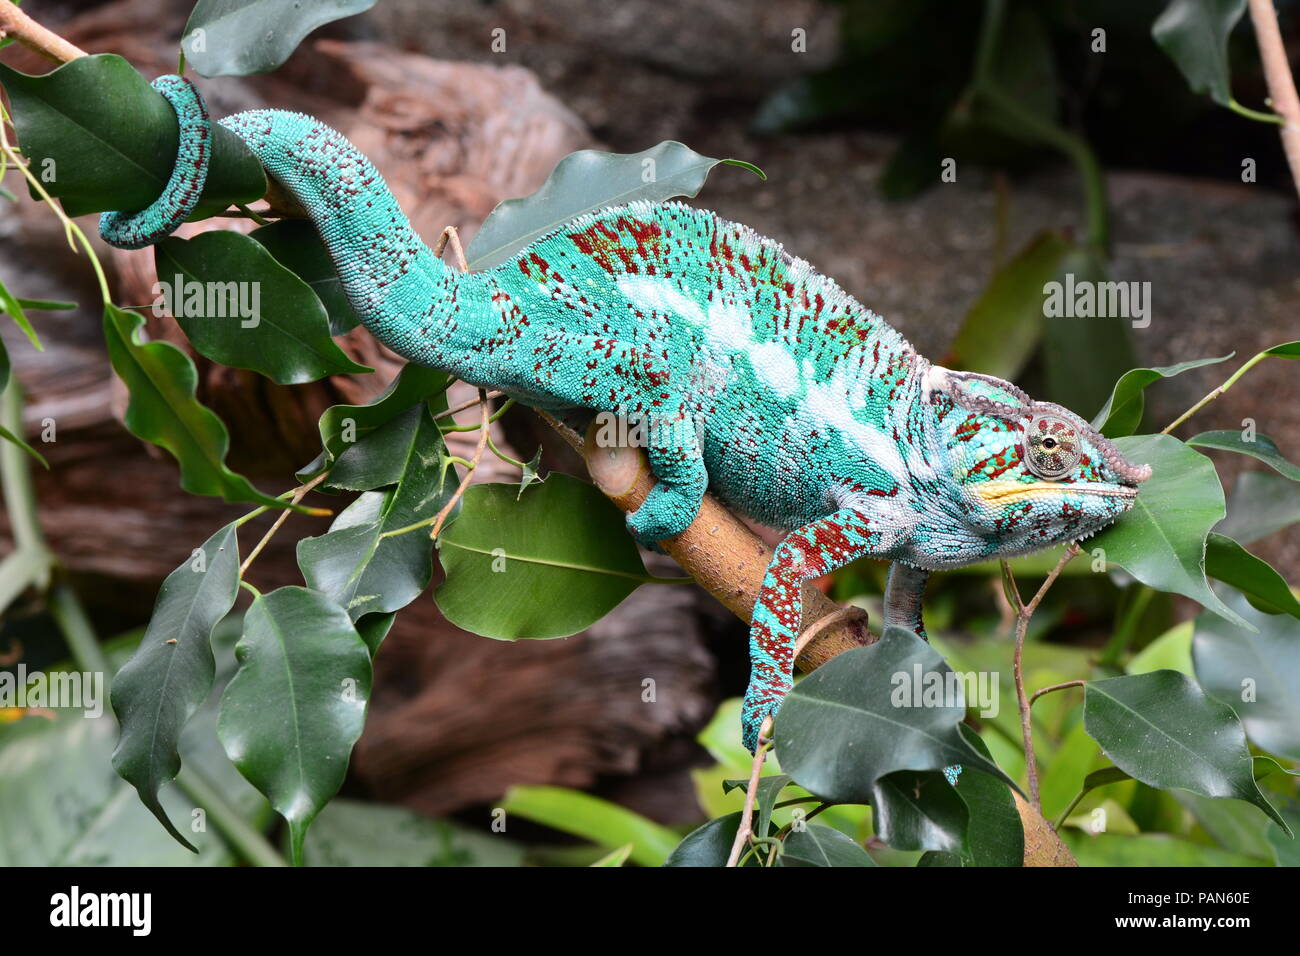 Un colorido chameleon paseos alrededor de su entorno, mostrando su belleza. Foto de stock